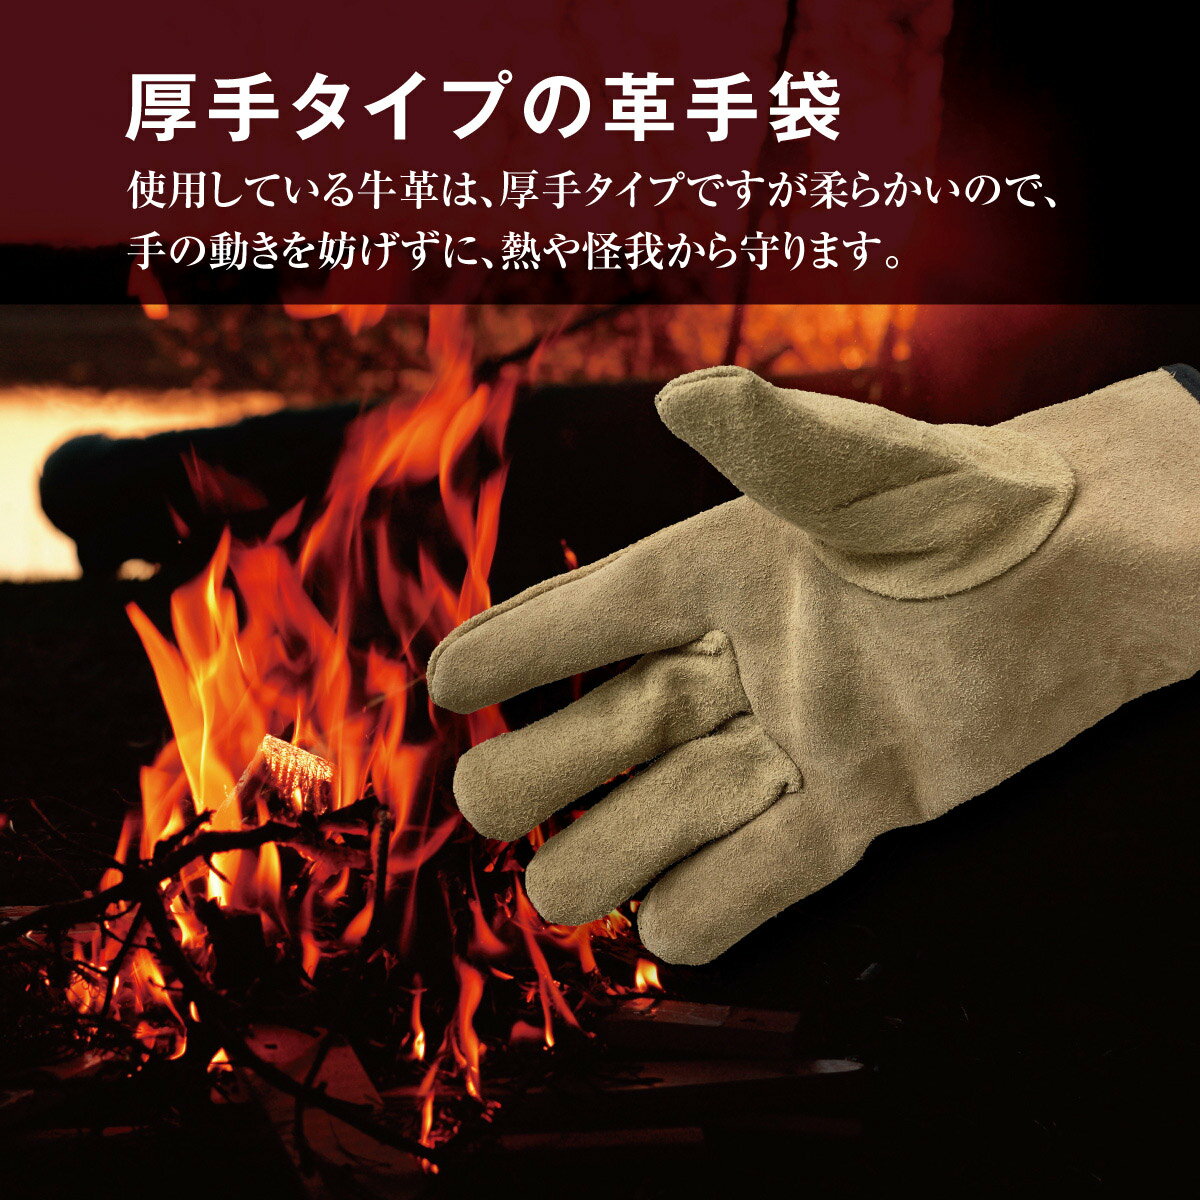 キャンプグローブ 耐熱 グローブ 本革レザー 厚手 手袋 レザーグローブ バーベキュー アウトドア 牛革 保護 キャンプ BBQ b-gloves01